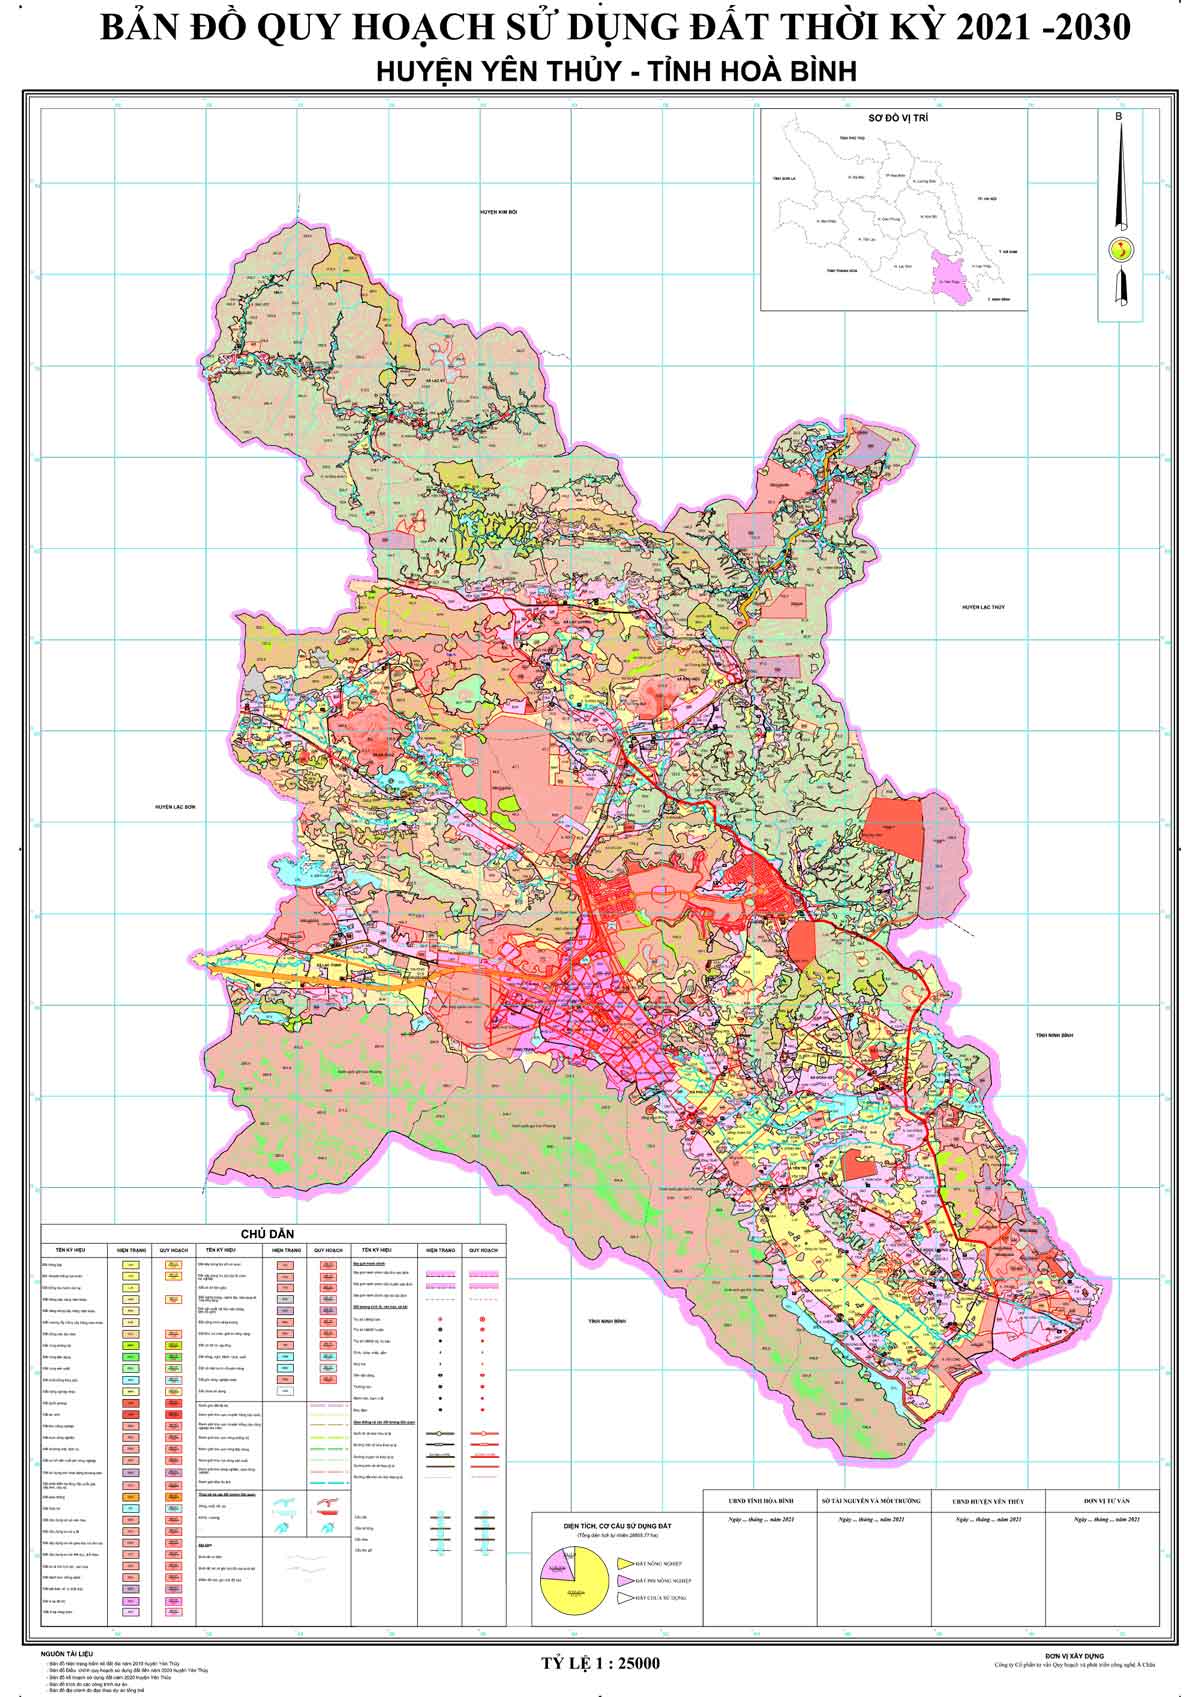 Bản đồ QHSDĐ huyện Yên Thủy đến năm 2030